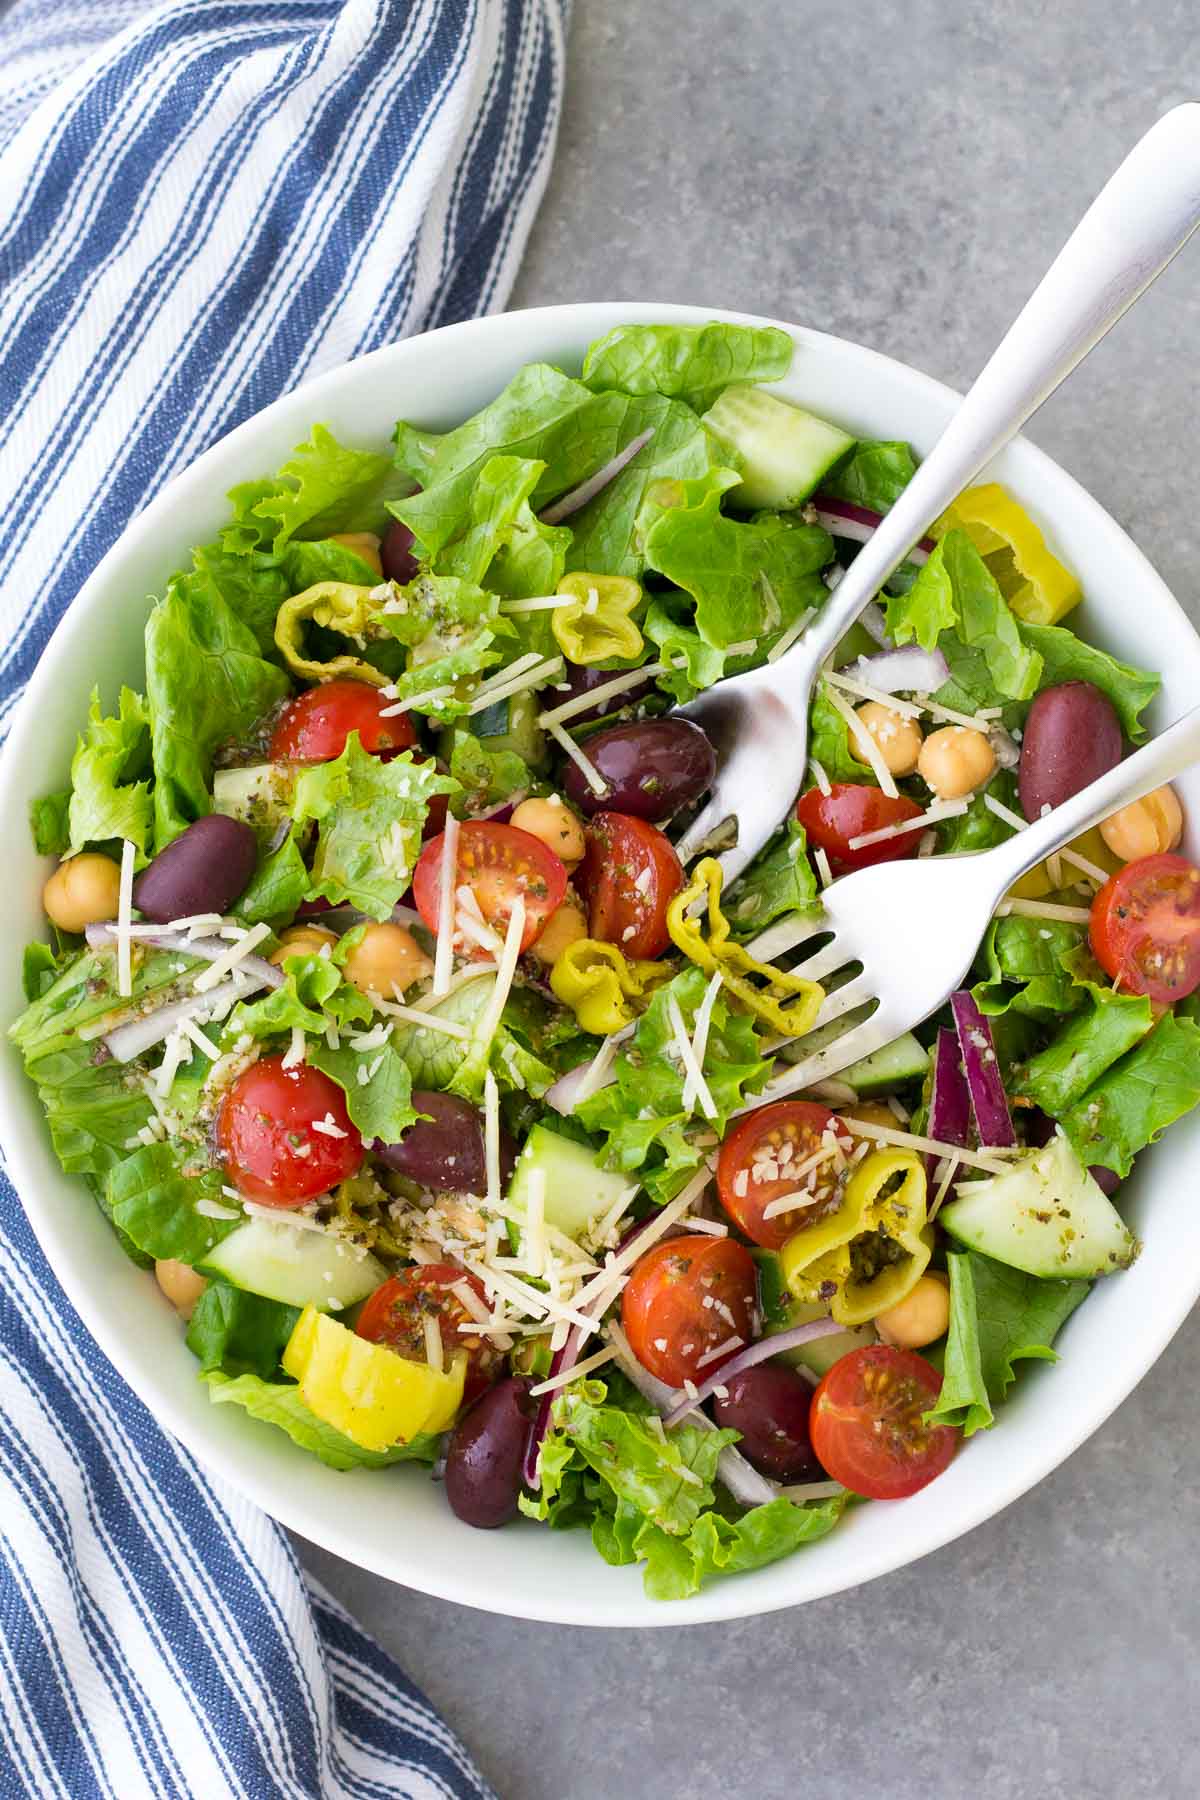 Italian Salad - Healthy and Delicious!